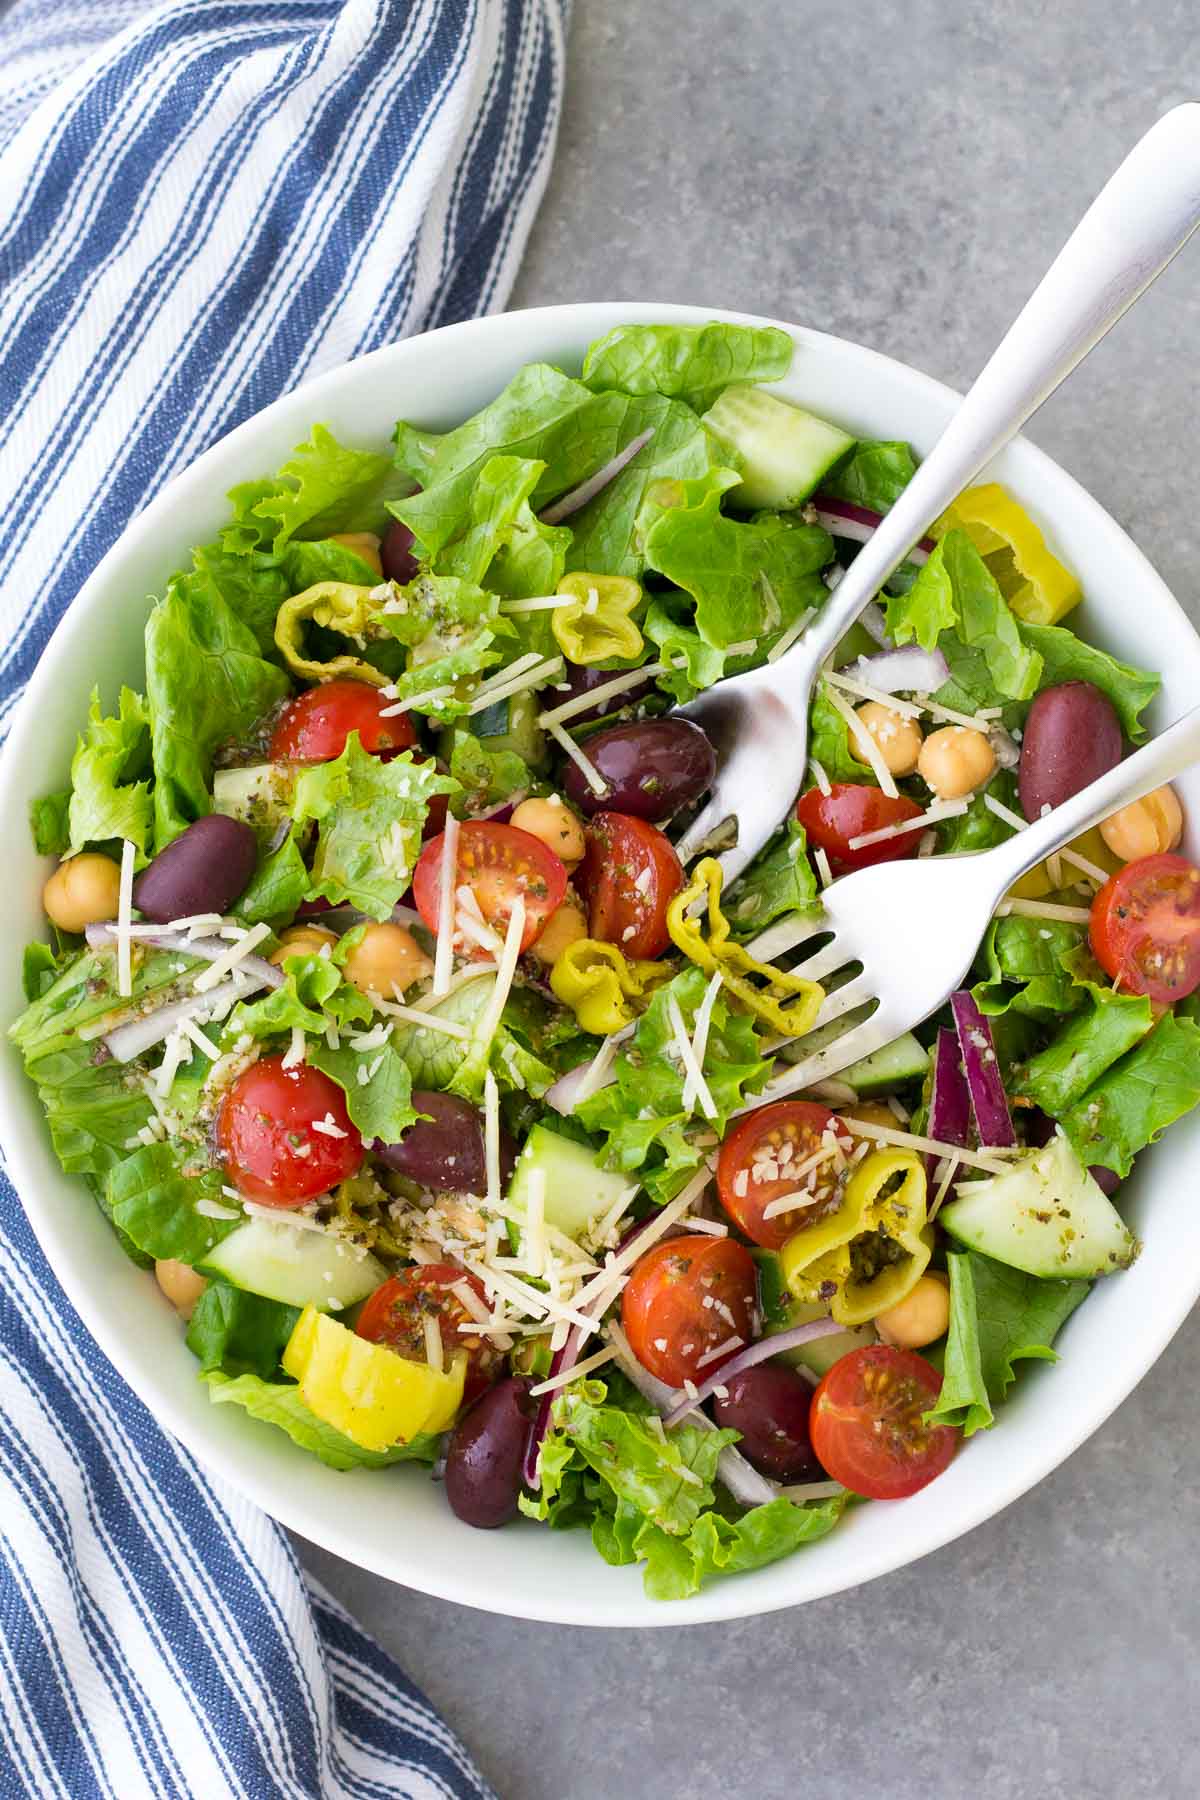 Italian Salad - Healthy and Delicious!